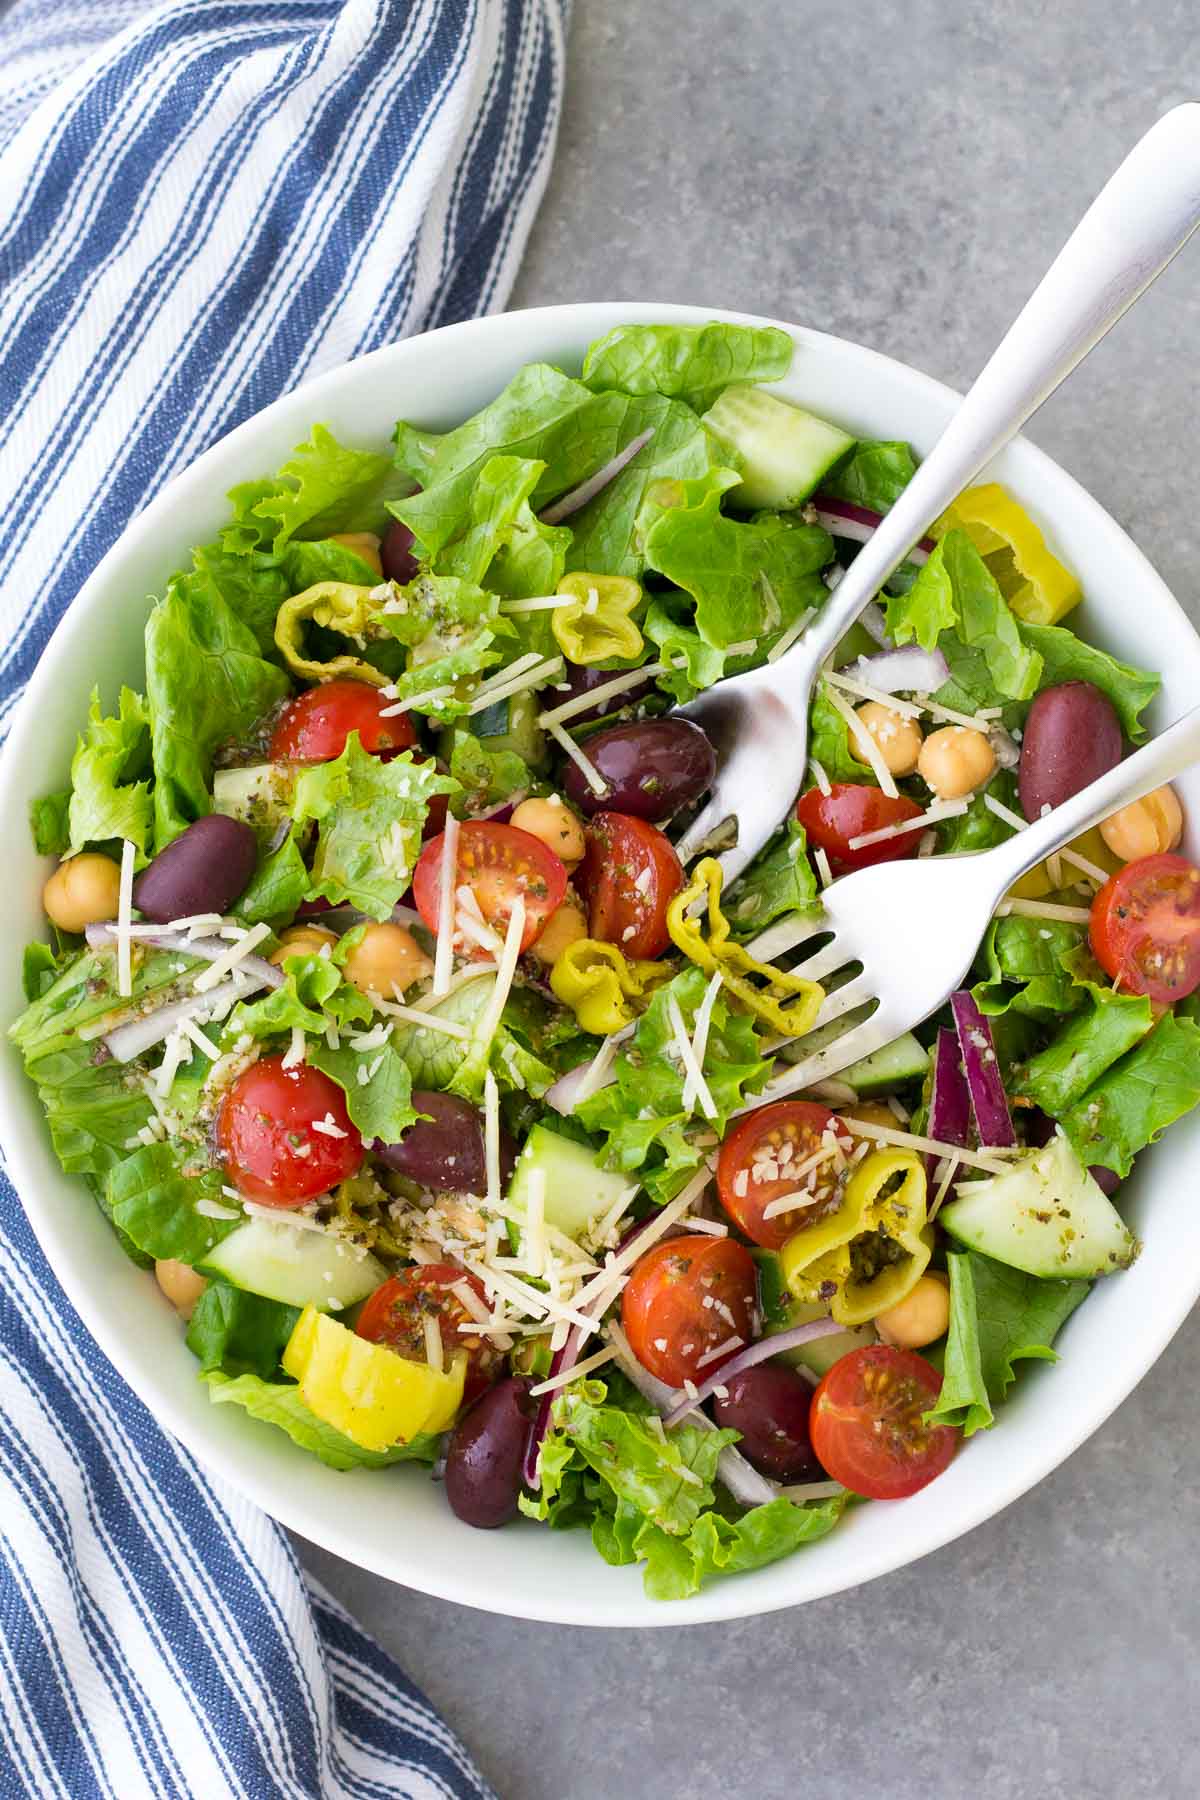 Italian Salad - Healthy and Delicious!